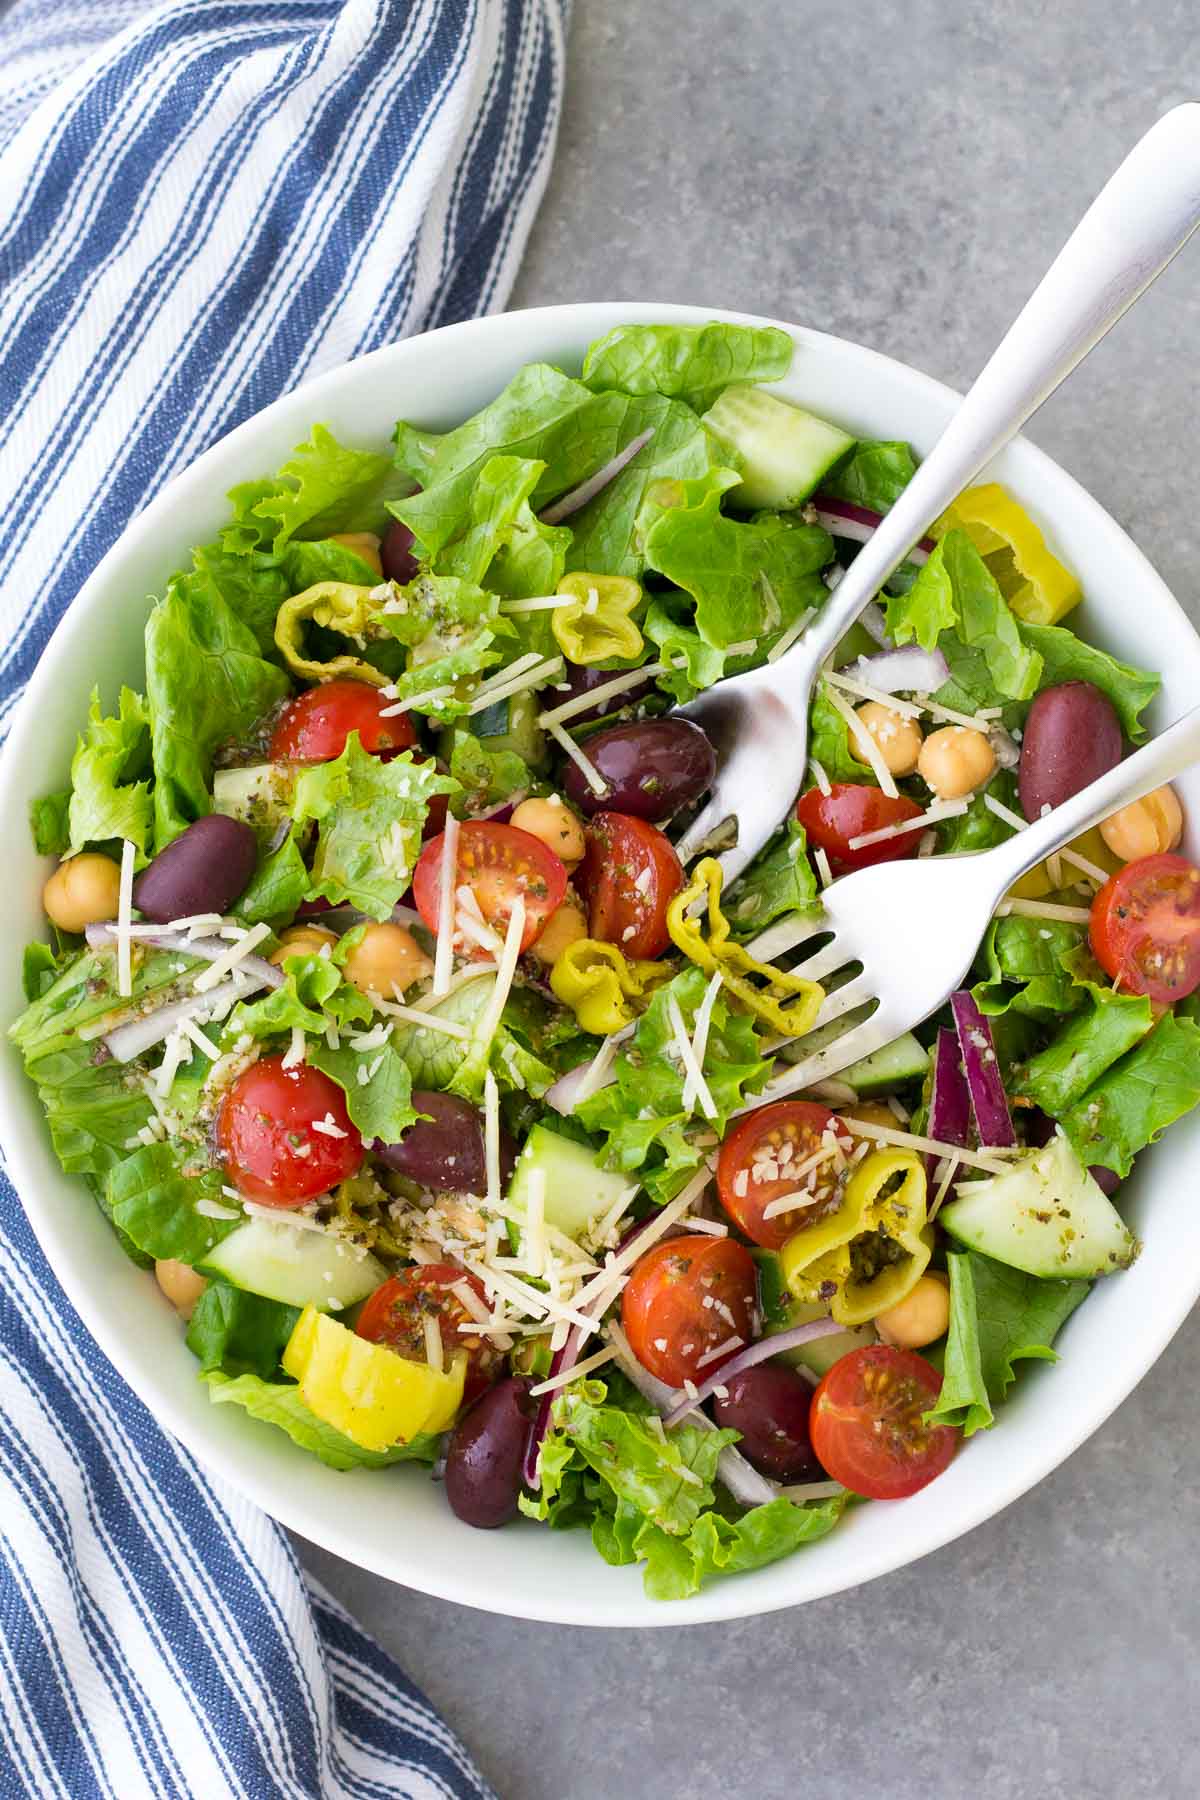 Italian Salad - Healthy and Delicious!